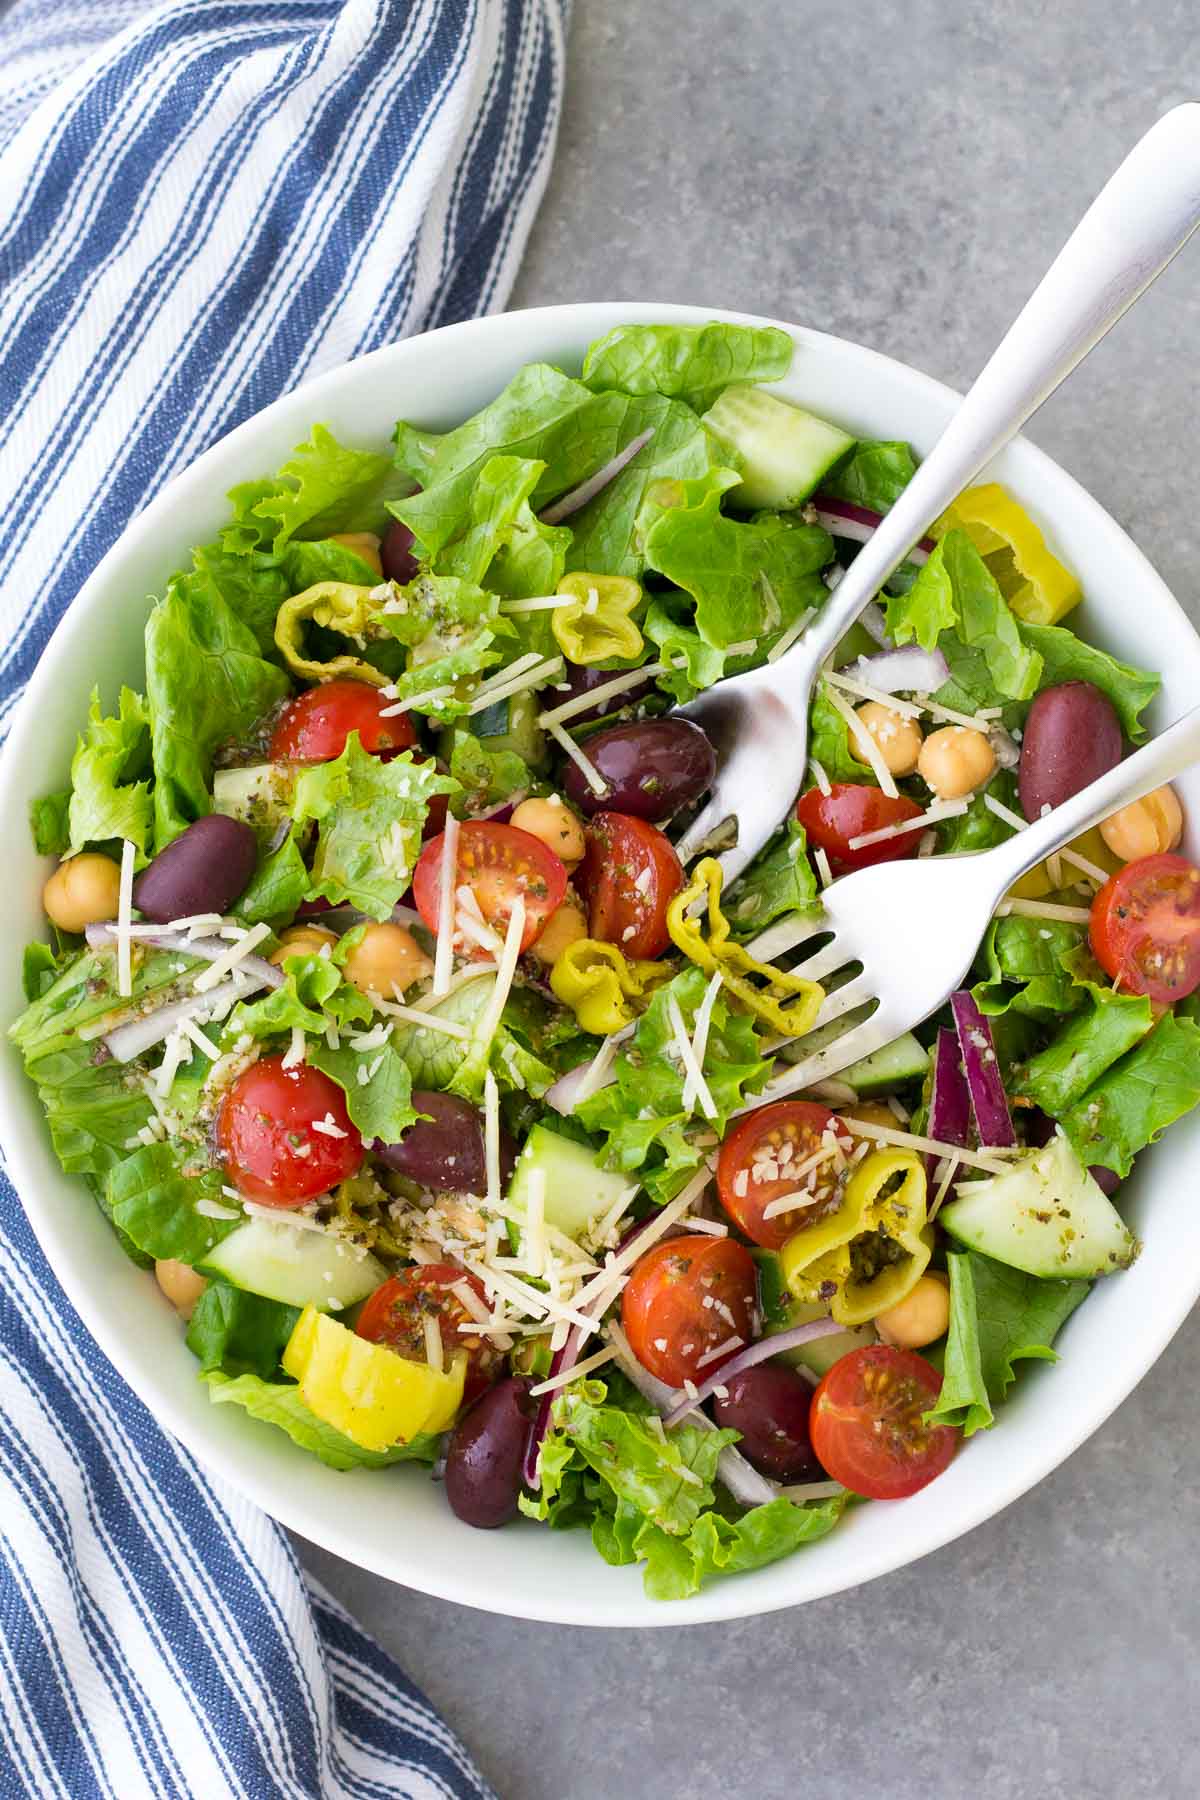 Italian Salad - Healthy and Delicious!